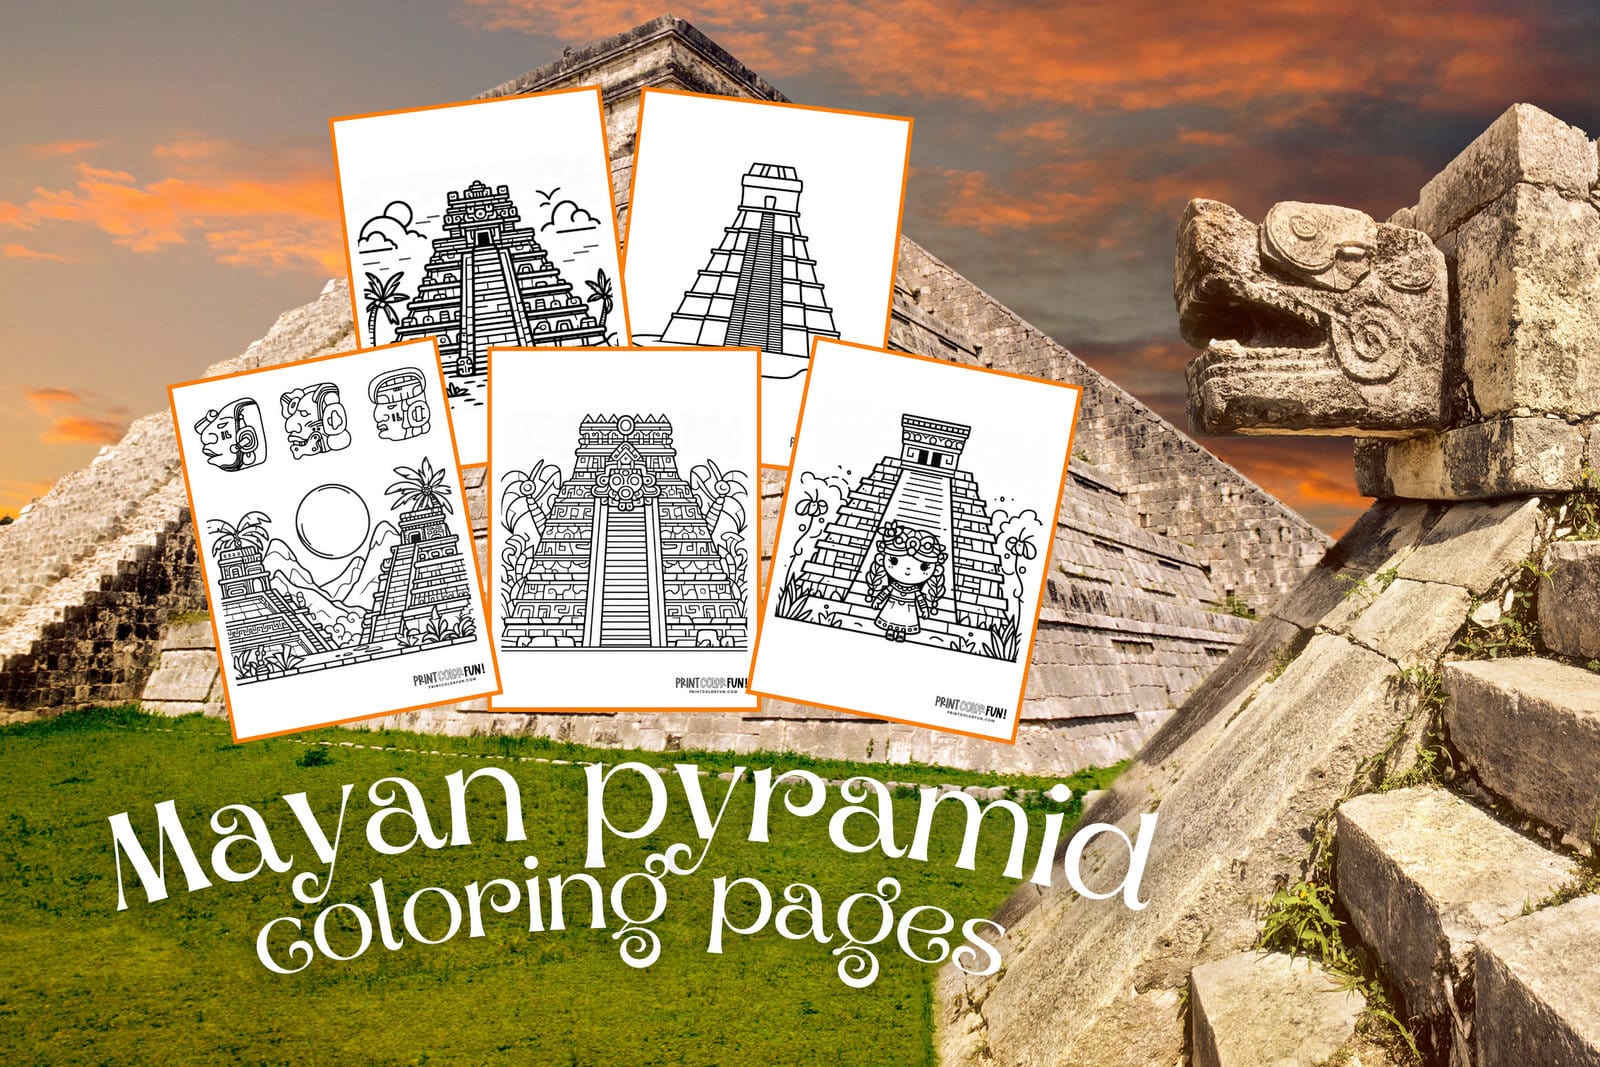 Mayan pyramid coloring pages at PrintColorFun com